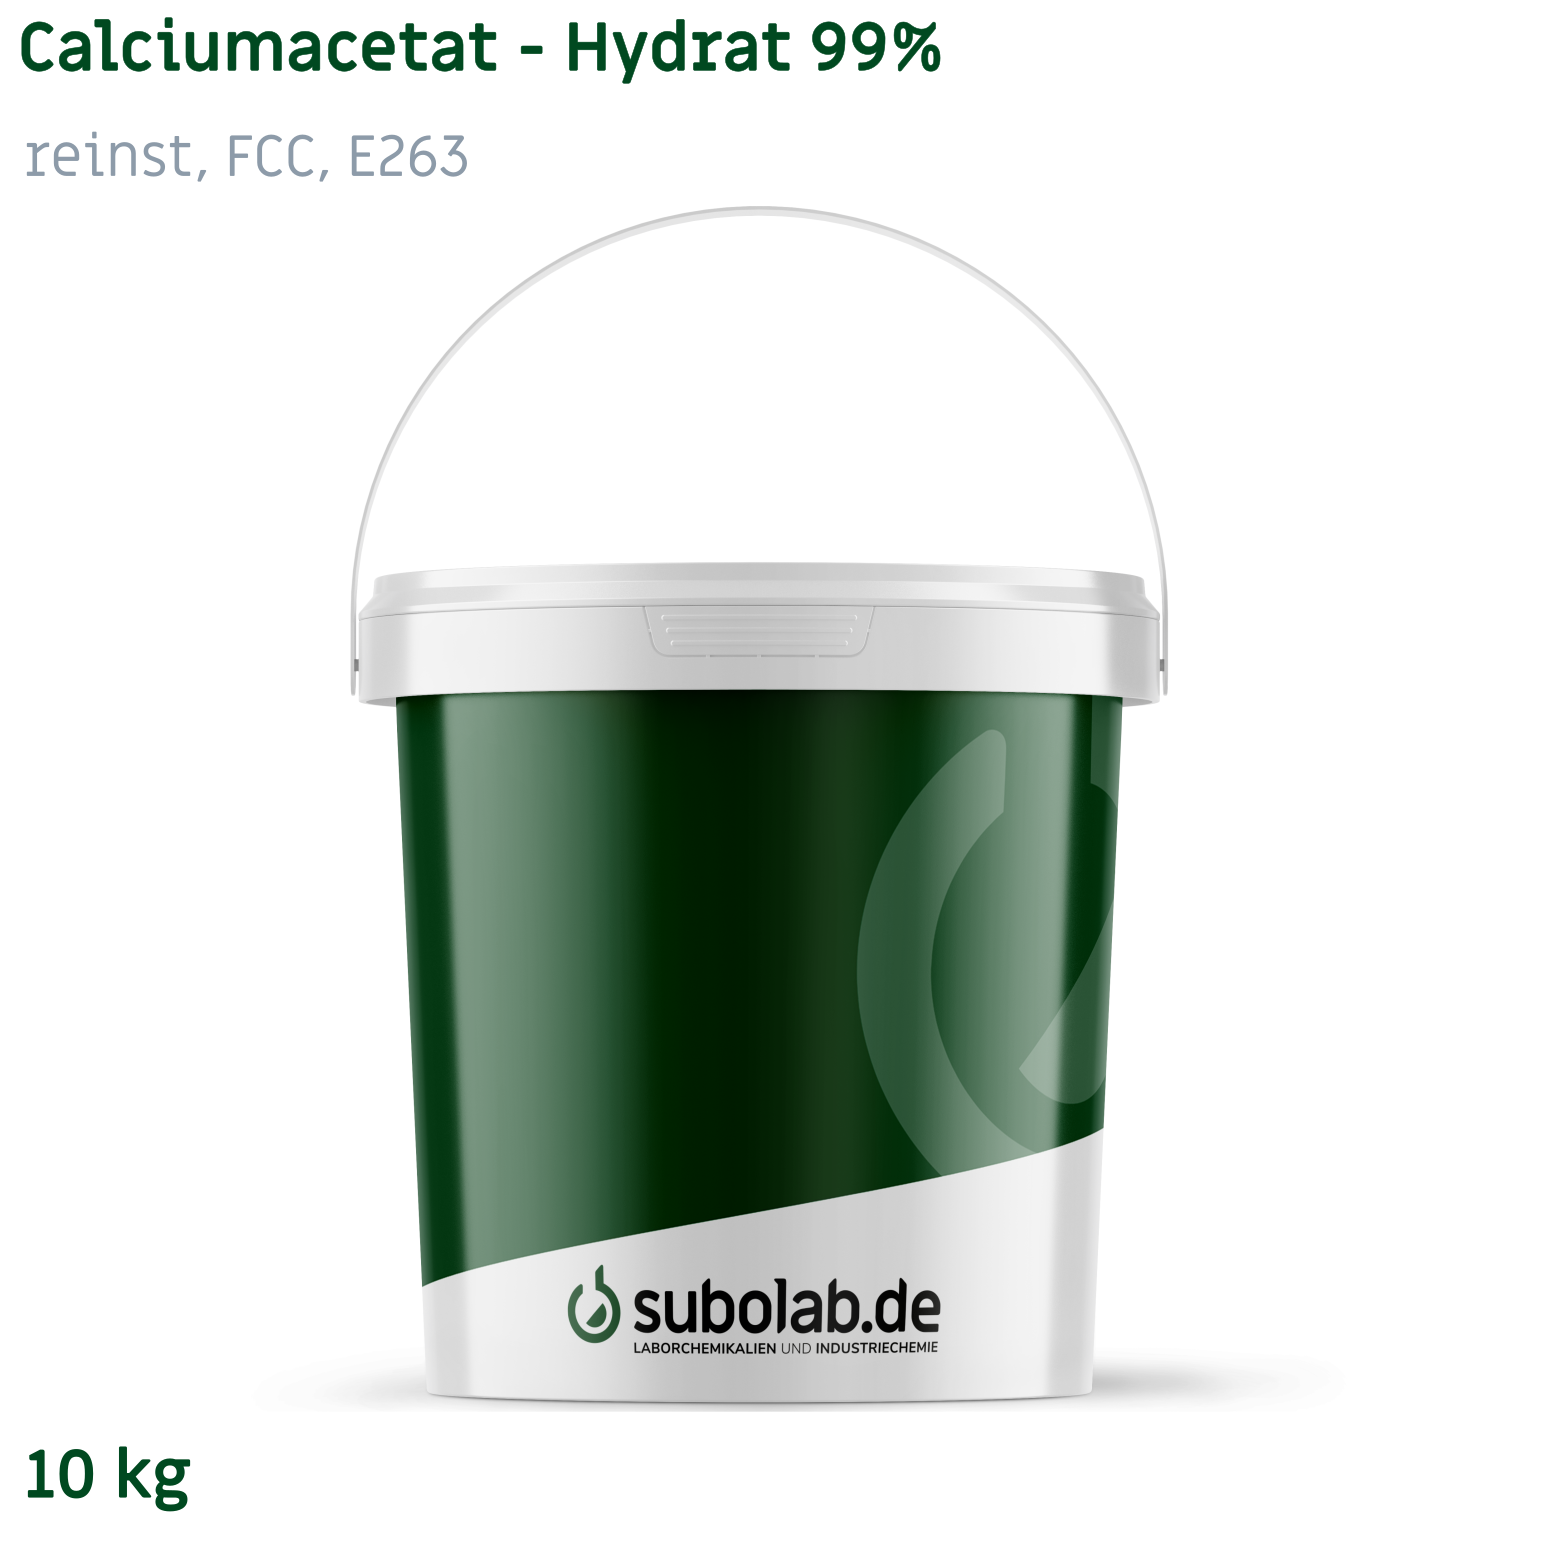 Bild von Calciumacetat - Hydrat 99% reinst, FCC, E263 (10 kg)